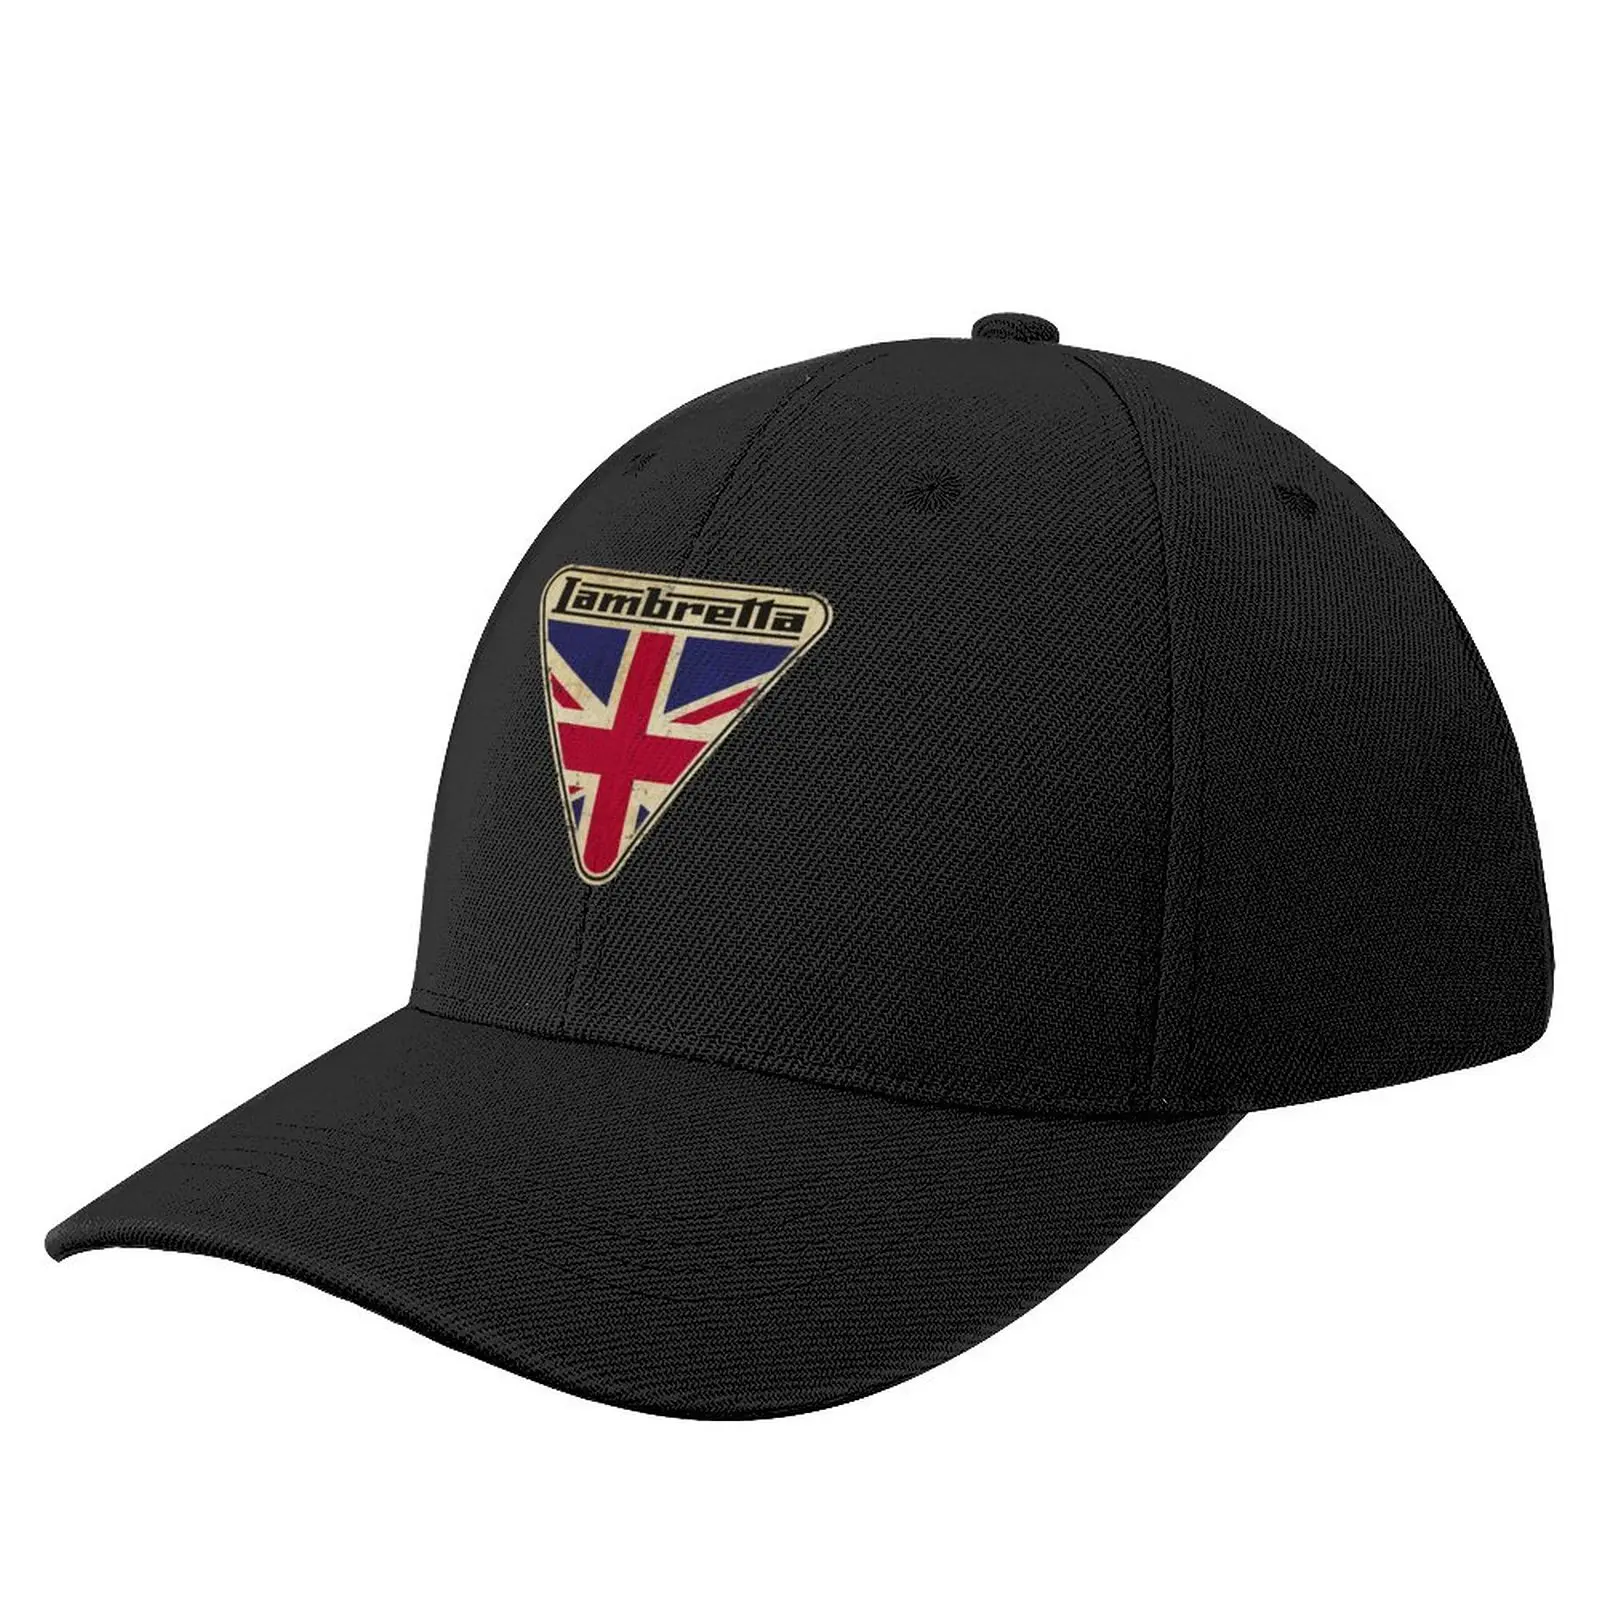 

Lambretta Scooter Union Jack Logo Baseball Cap Ball Cap derby hat Mountaineering Hat Women Men's